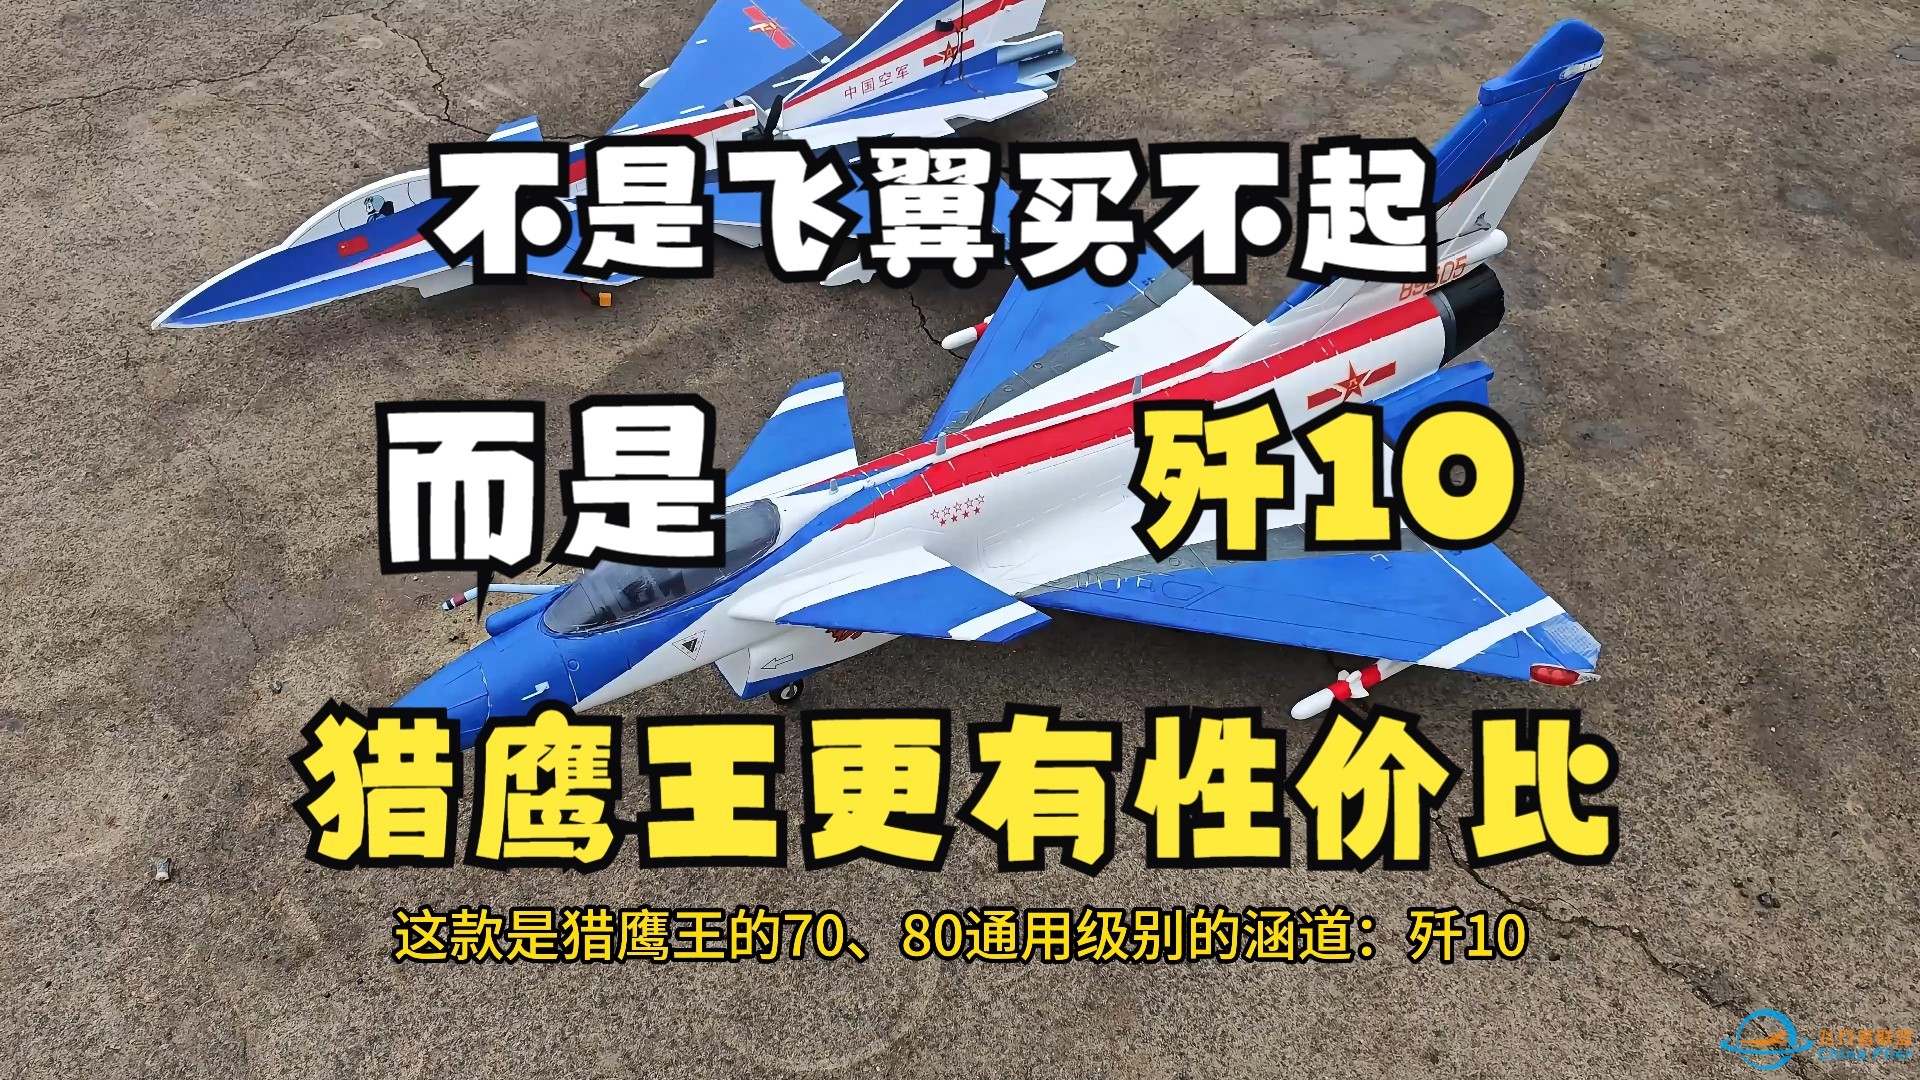 猎鹰王80mm涵道 歼10国产战斗机-航模固定翼-1.jpg